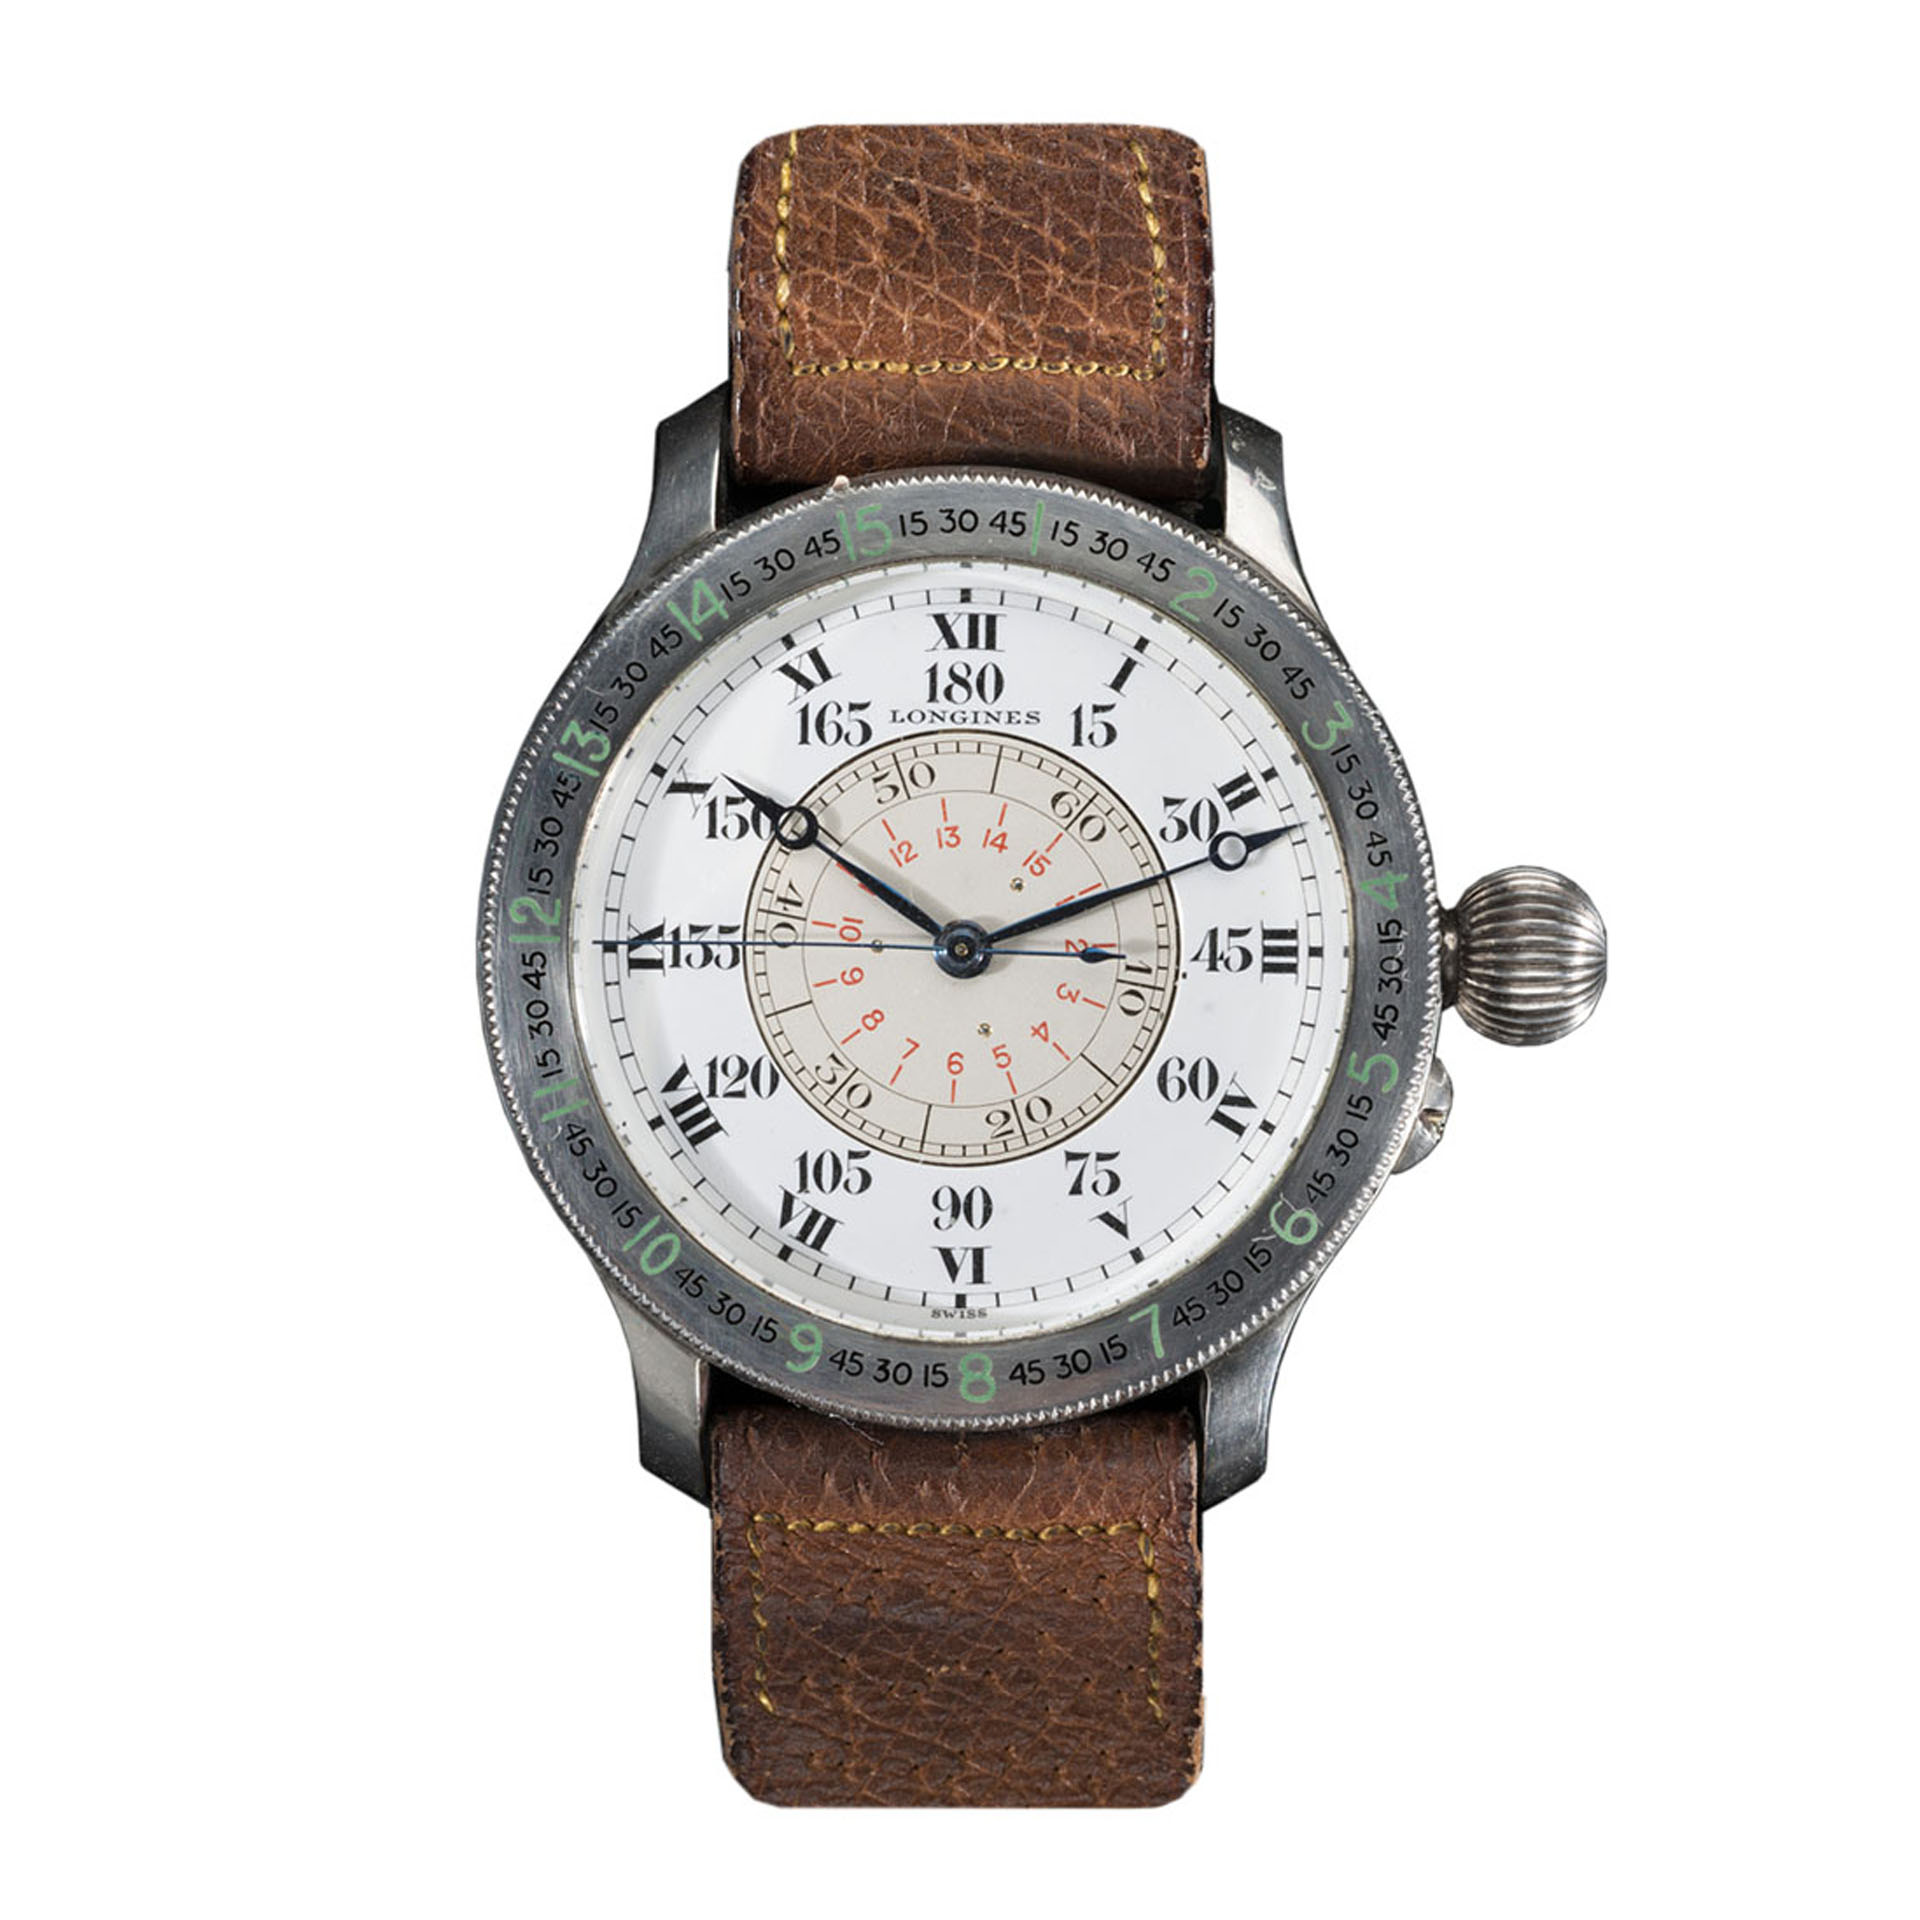 The Longines Lindbergh Hour Angle Watch